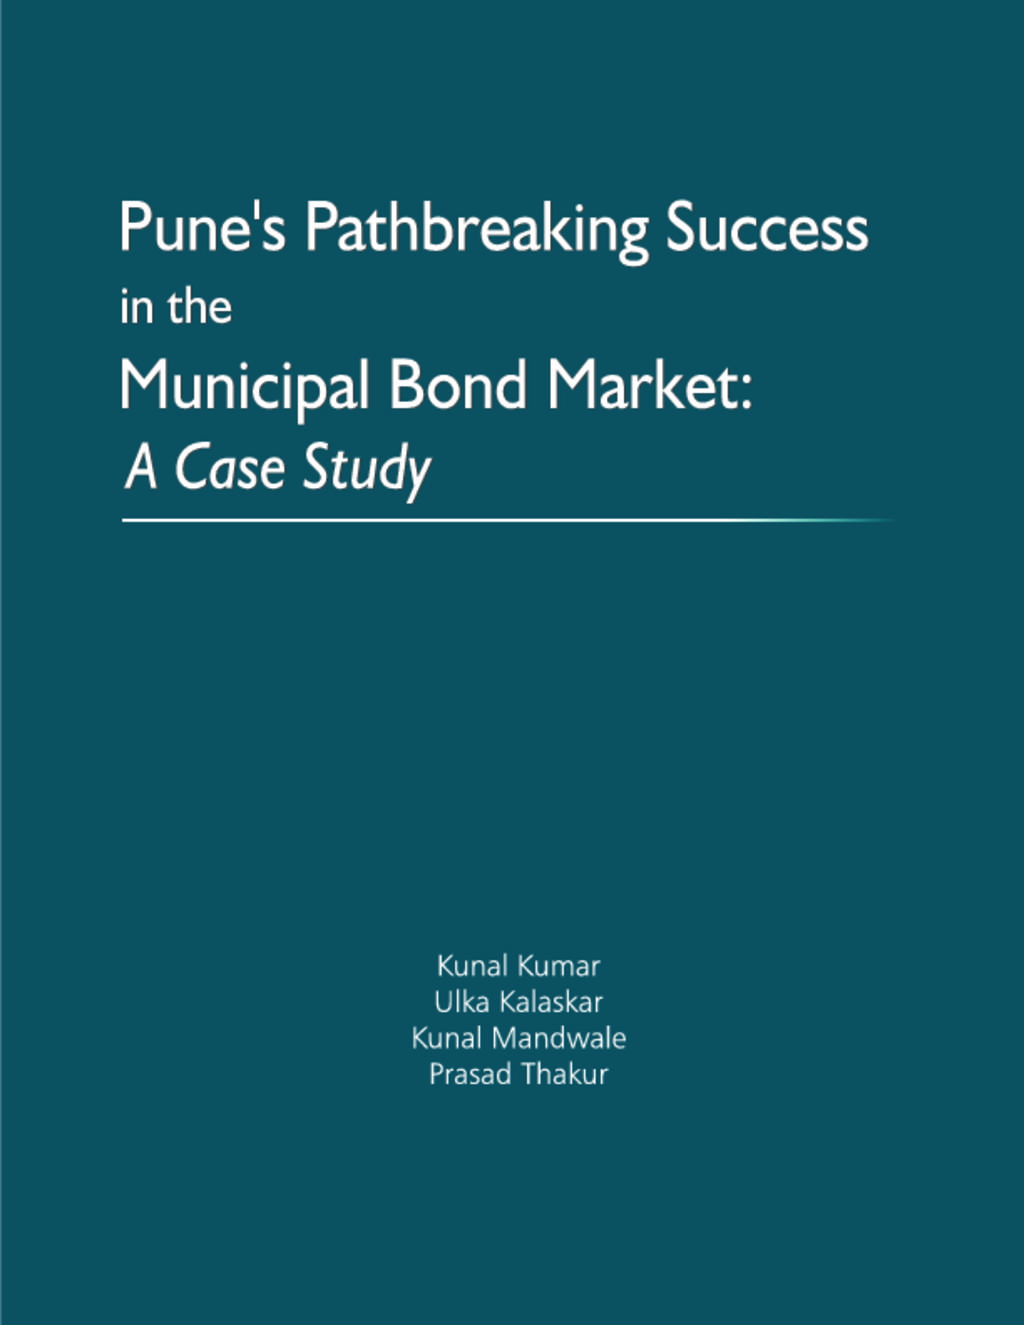 Municipal Finance Case Study Pune